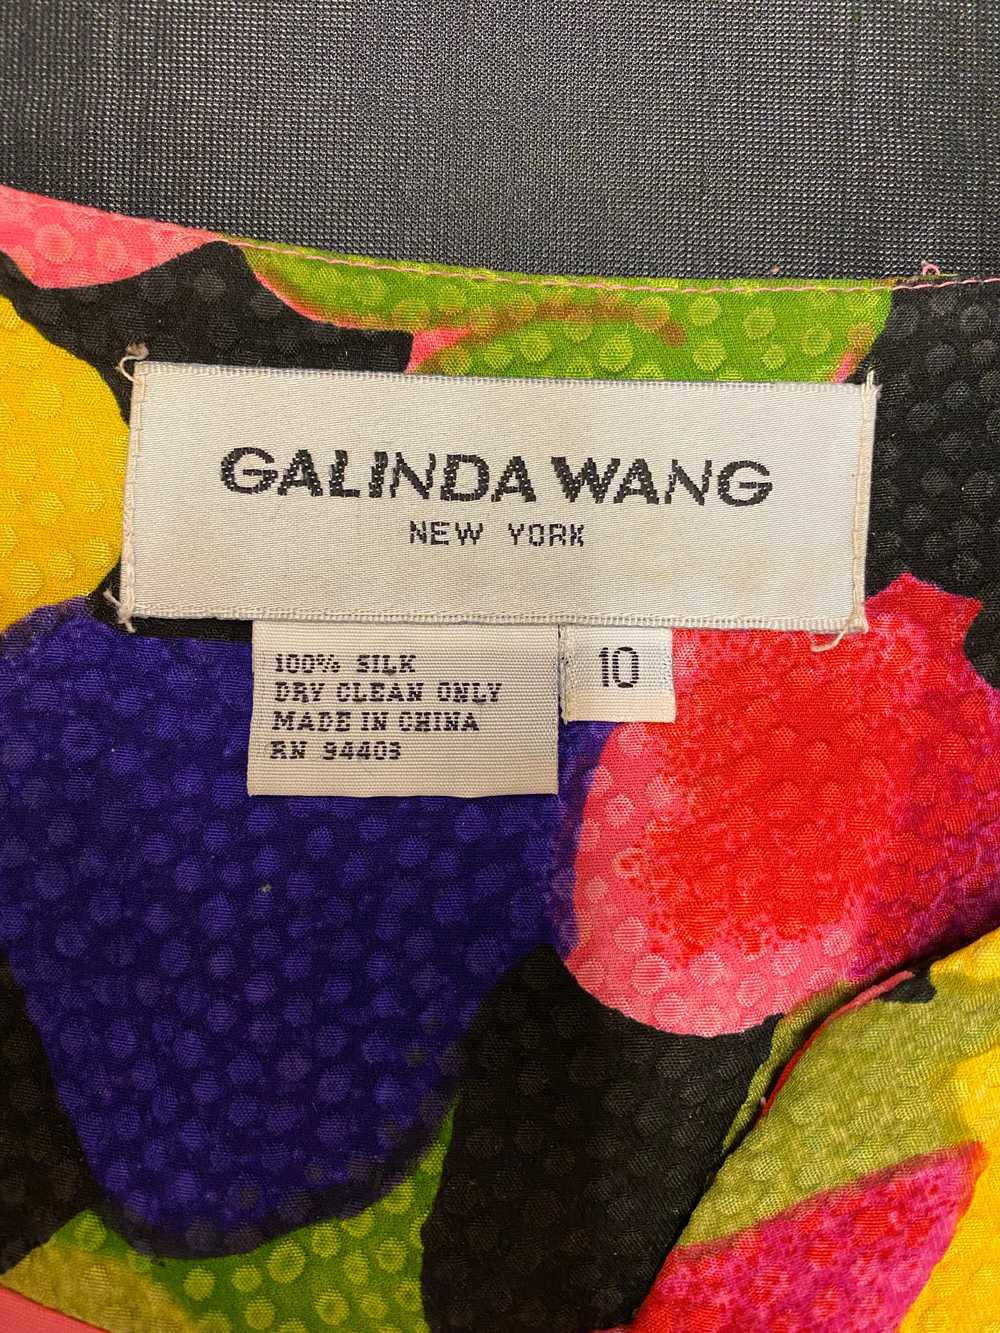 Galinda Wang Silk Blazer, M / L - image 5